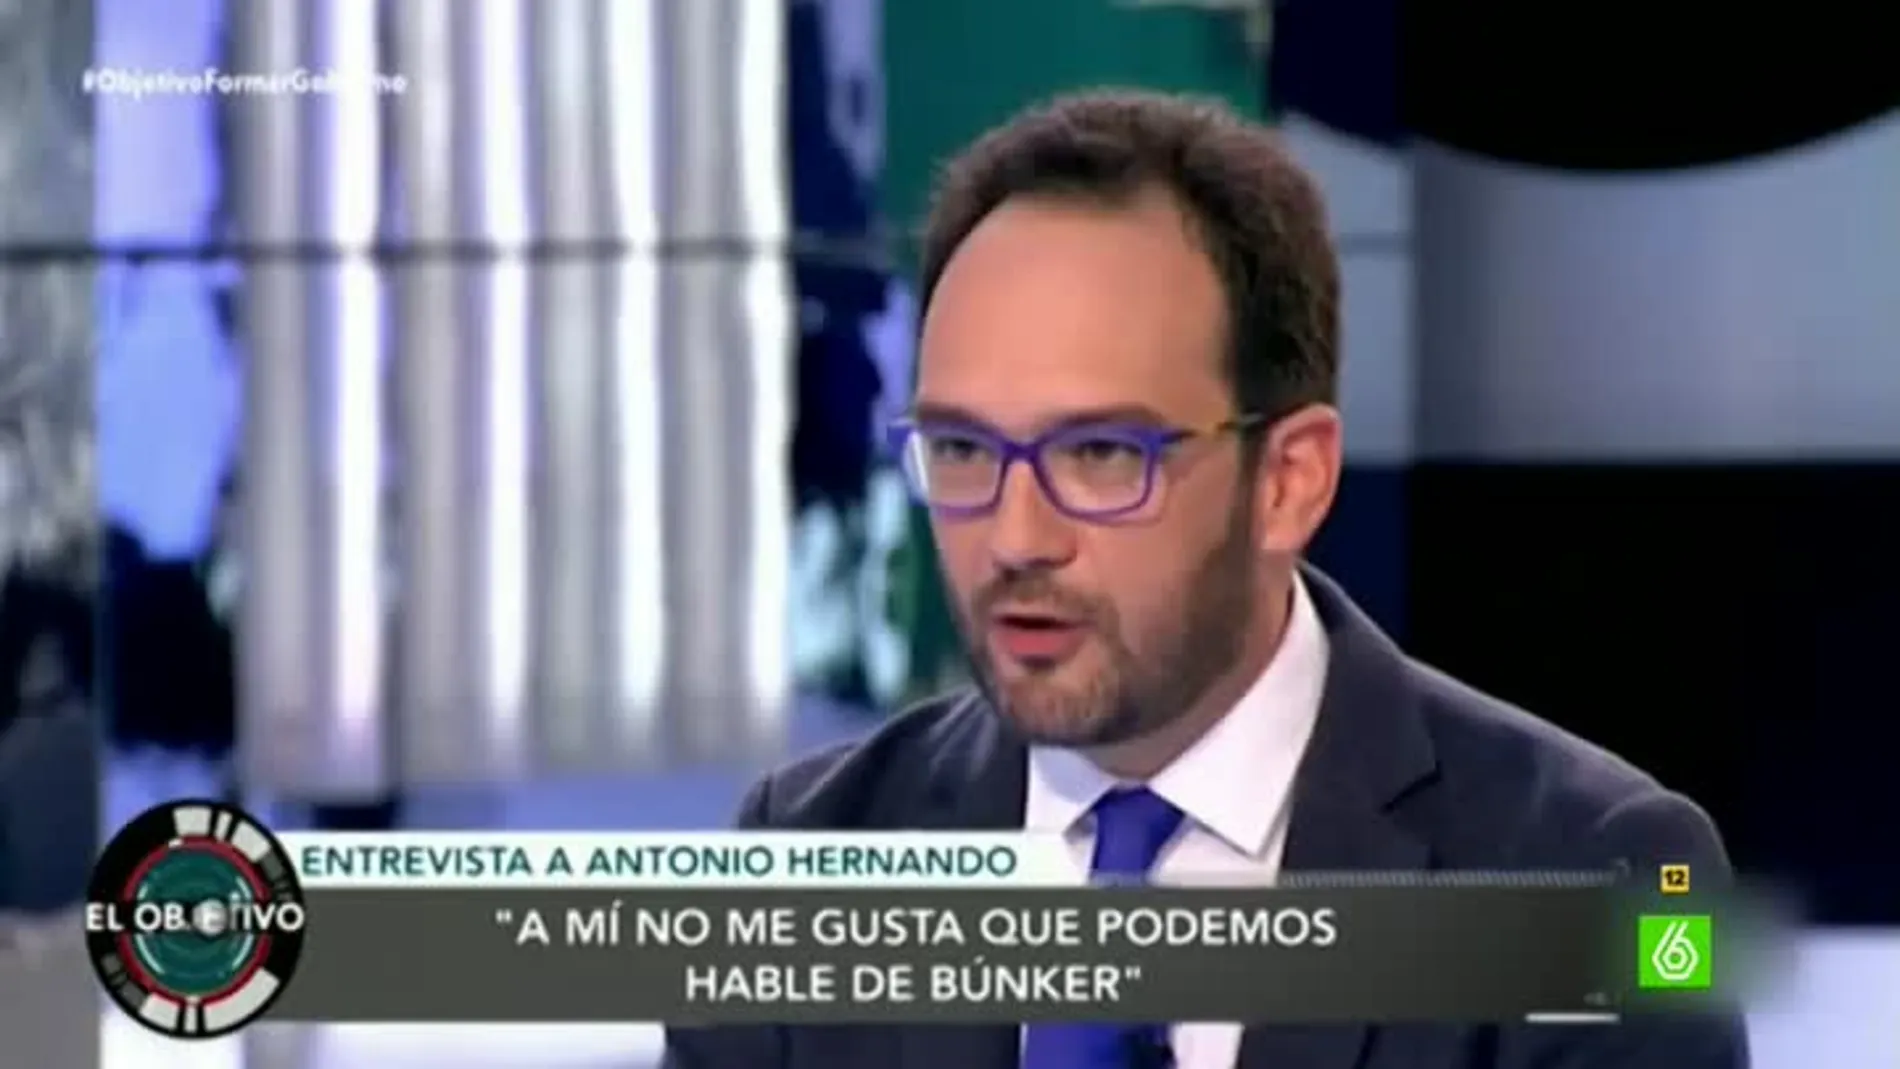 El portavoz del grupo socialista del Congreso, Antonio Hernando